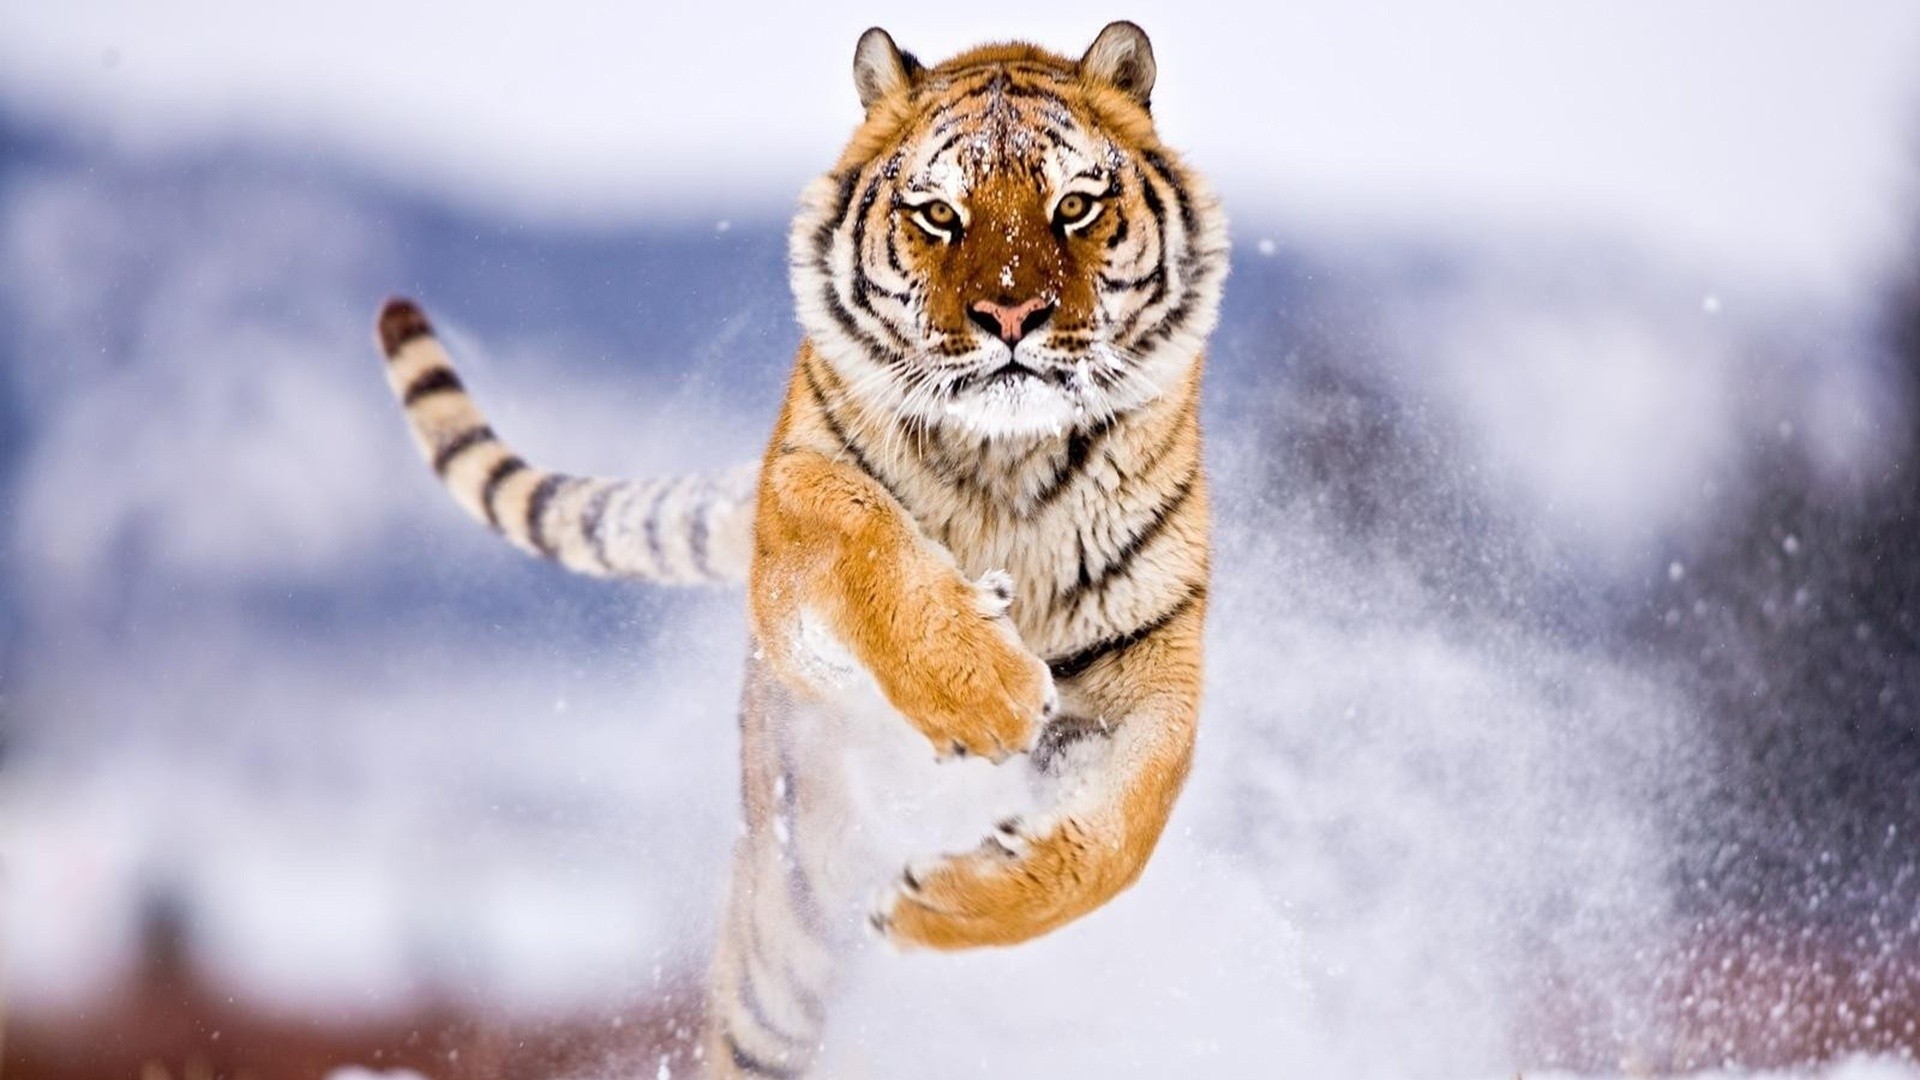 Tiger Snow Attack Animals Jumping 1920x1080